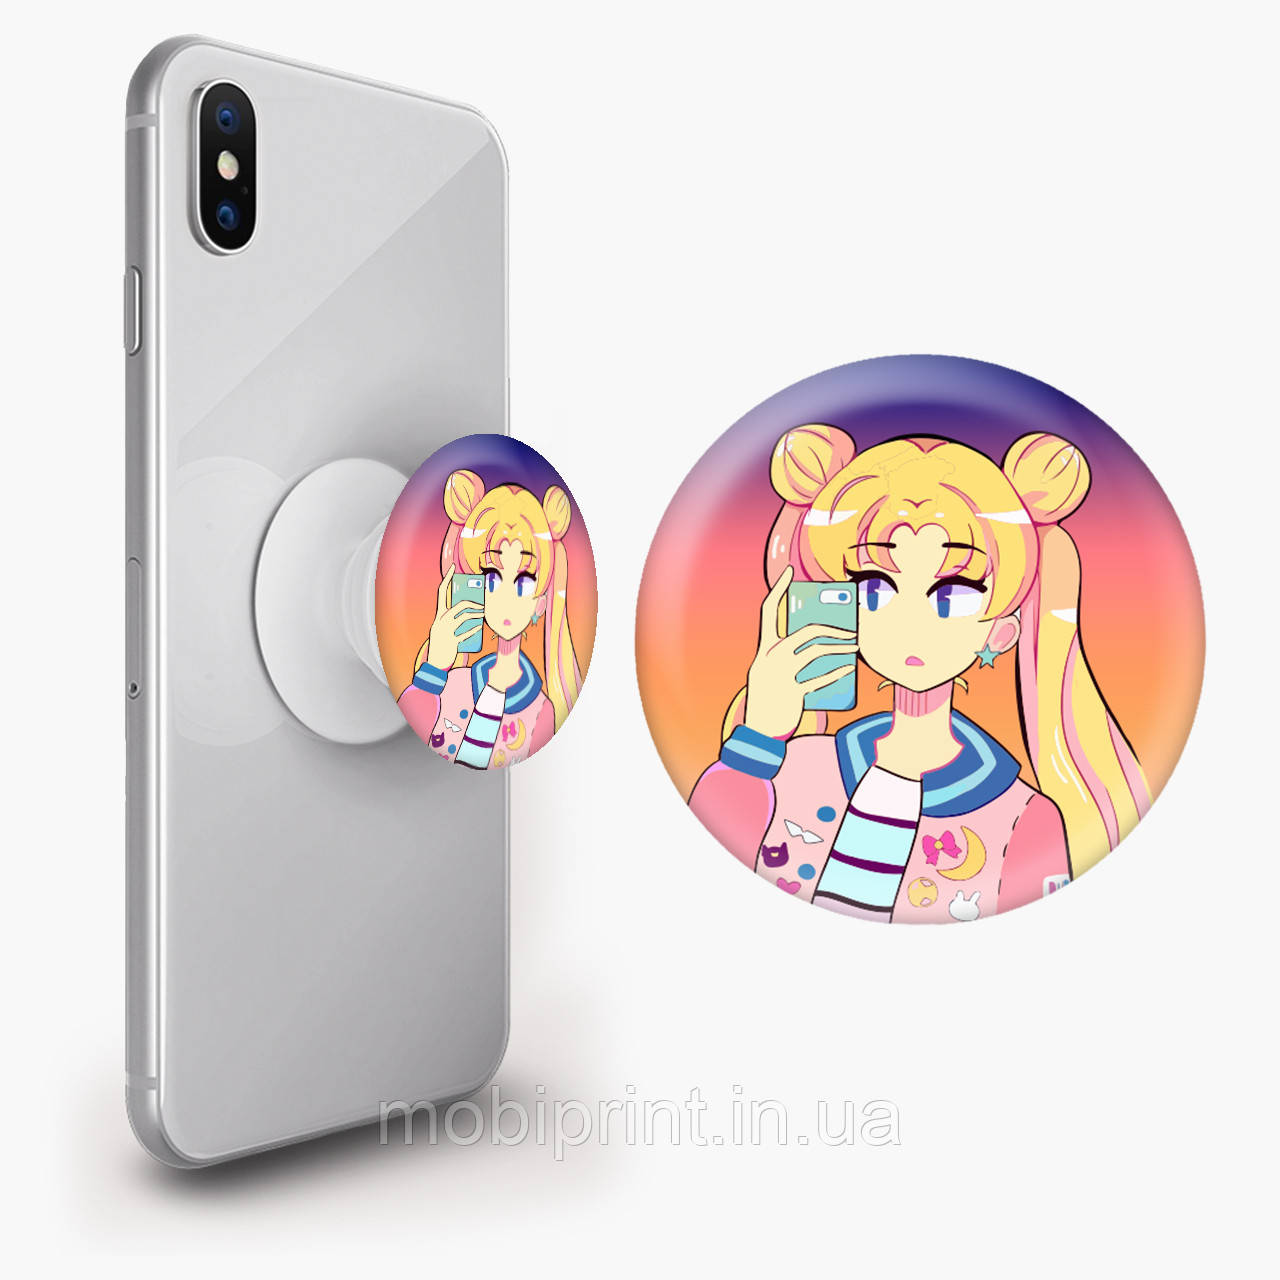 Попсокет (Popsockets) тримач для смартфона Сейлор Мун (Sailor Moon) (8754-2924)